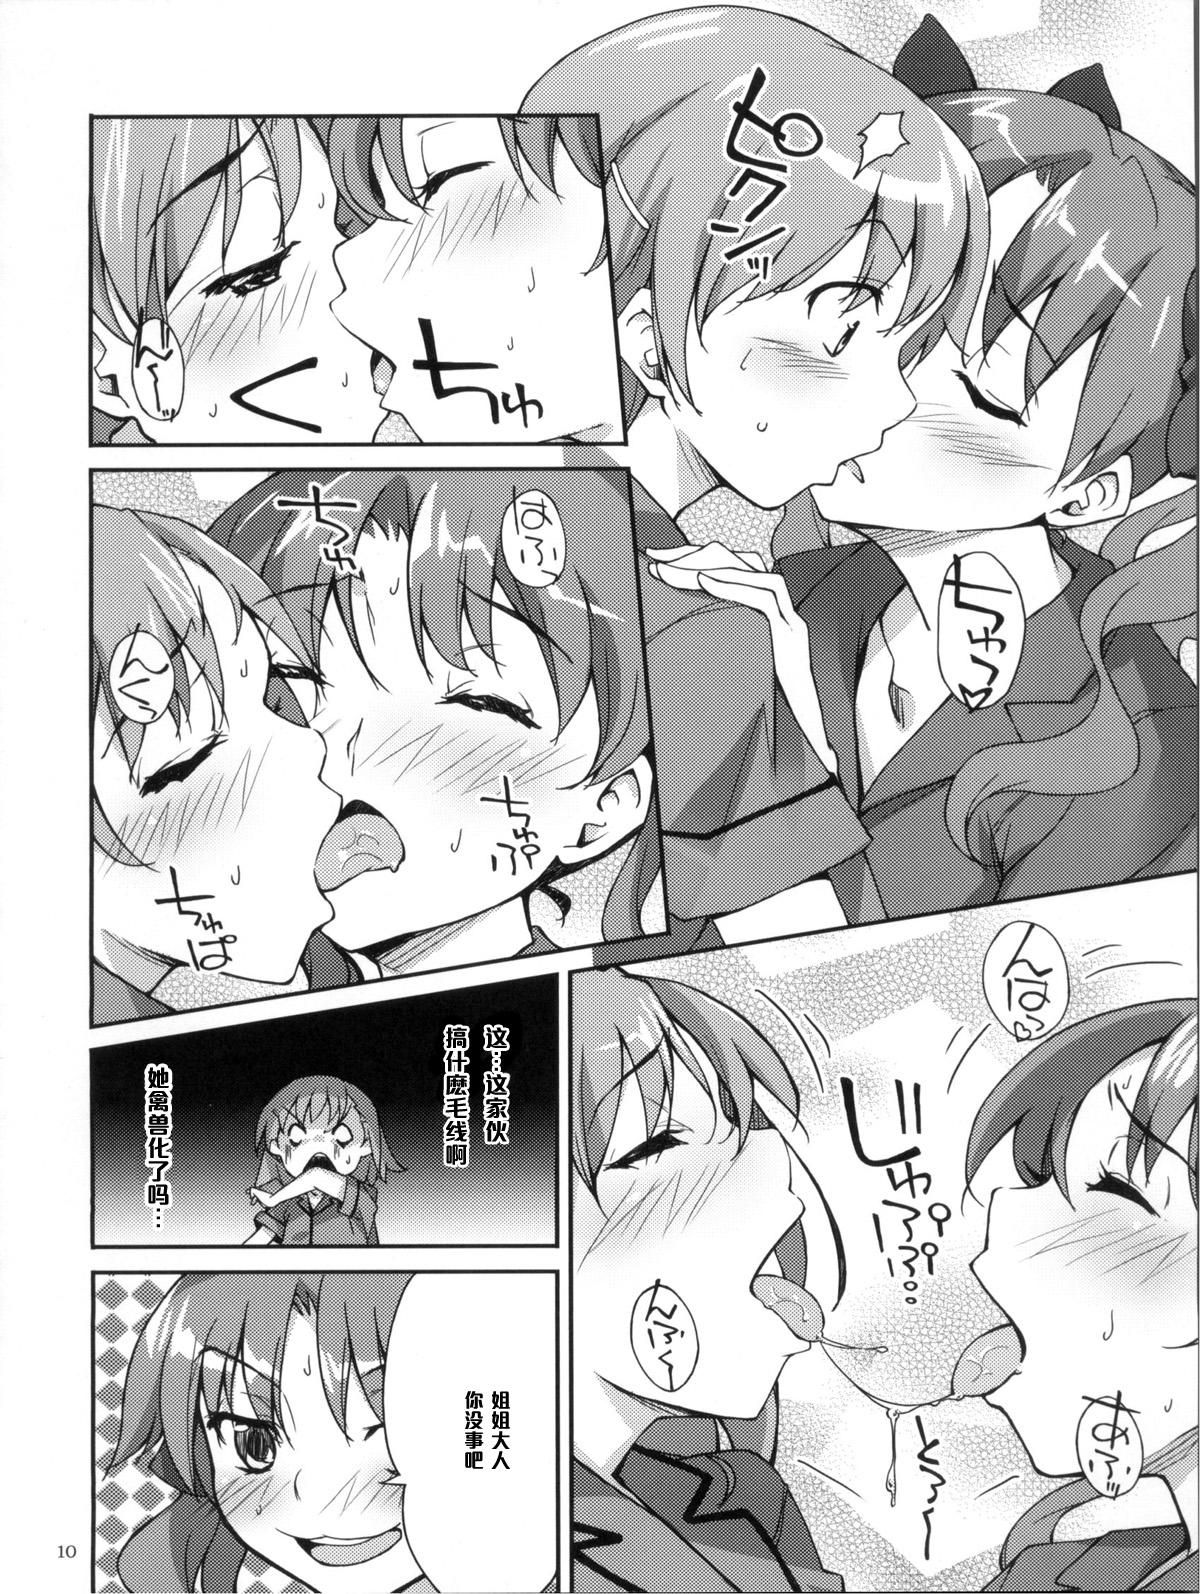 Follada Desu no!! 2 - Toaru kagaku no railgun Innocent - Page 10